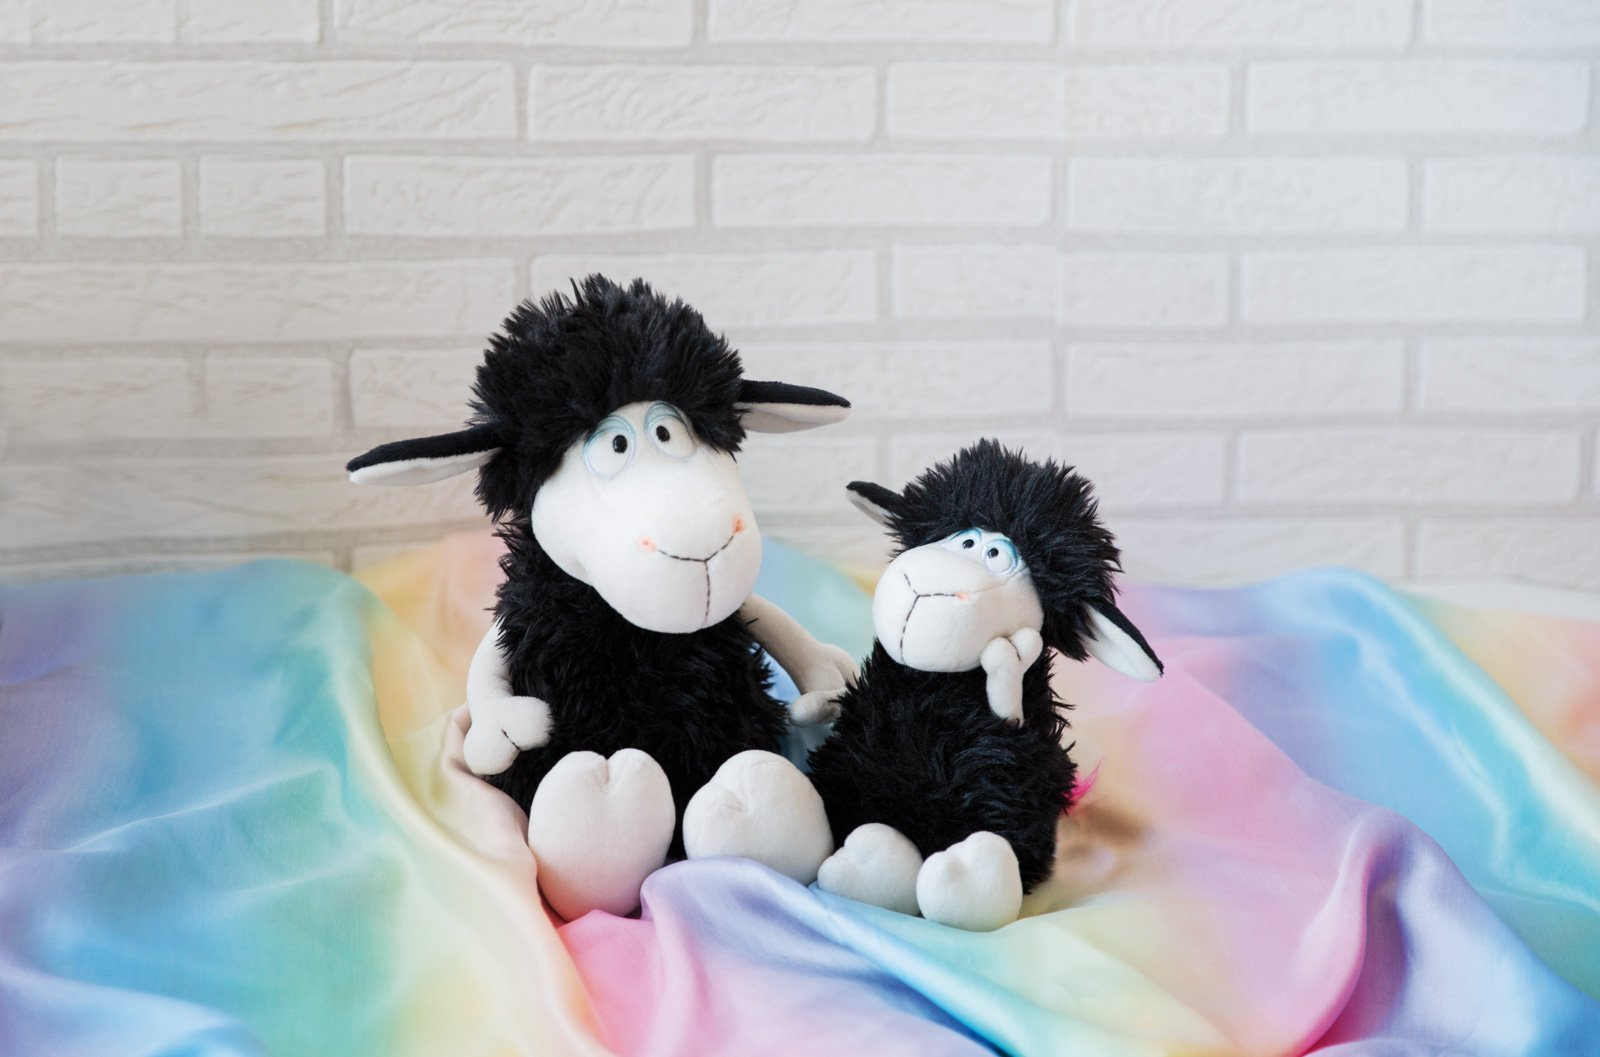 Plyšová hračka NICI Cuddly Sheep Jerome v podobě černé ovce s duhovým ocasem zaručeně potěší malé děti ve věku od 12 měsíců.